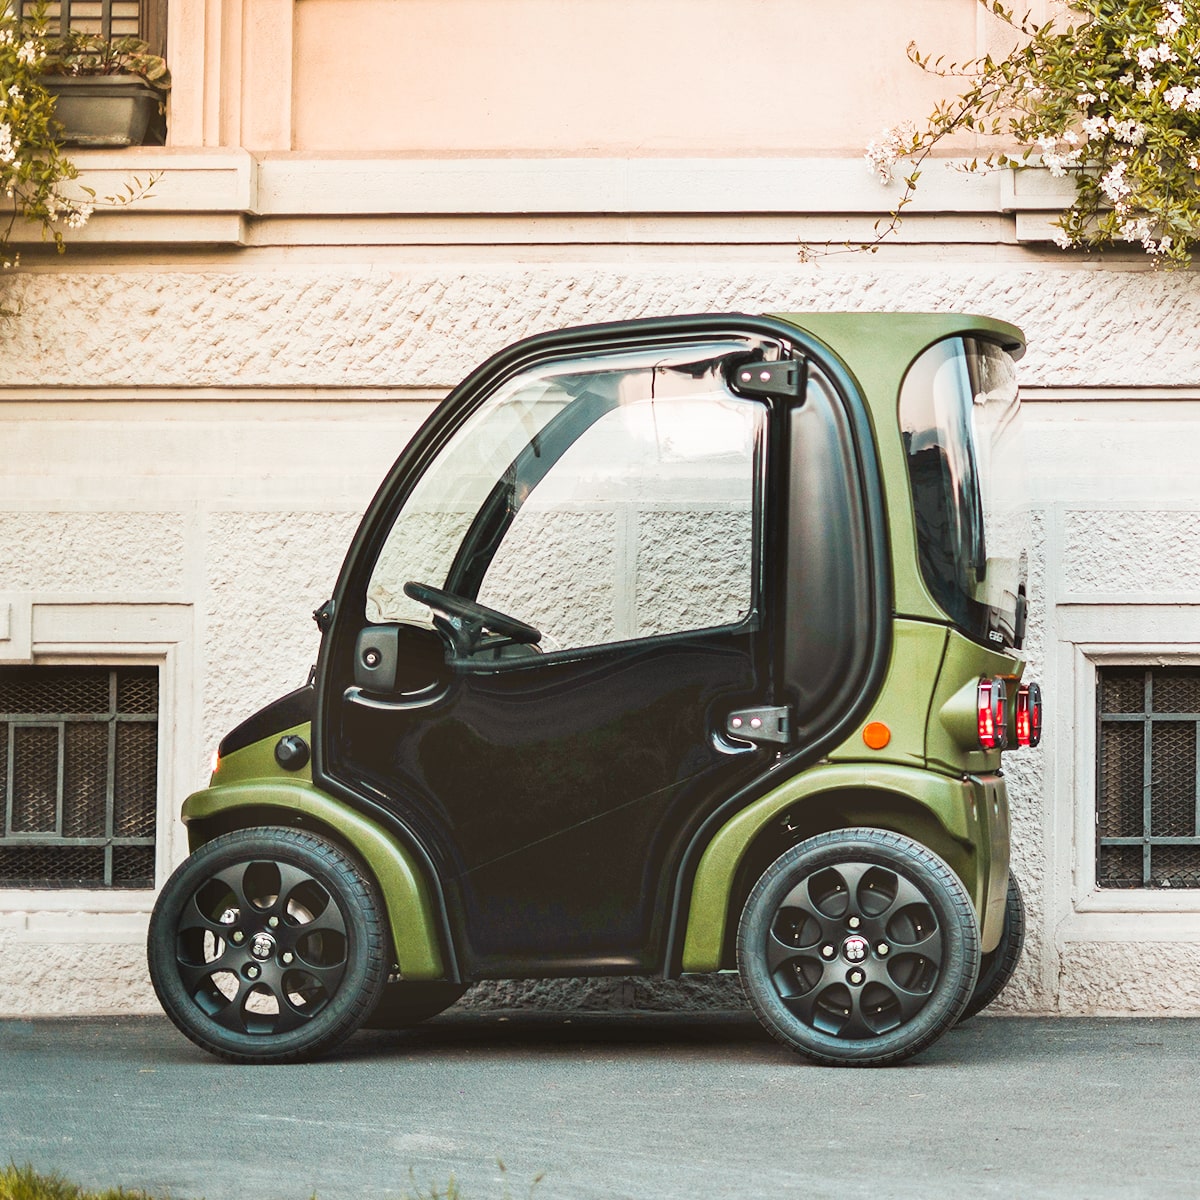 Τα νέα ηλεκτροκίνητα οχήματα Biro, η πρόταση για την μικροκινητικότητα σε μια νέα εποχή για πιο ανθρώπινες πόλεις